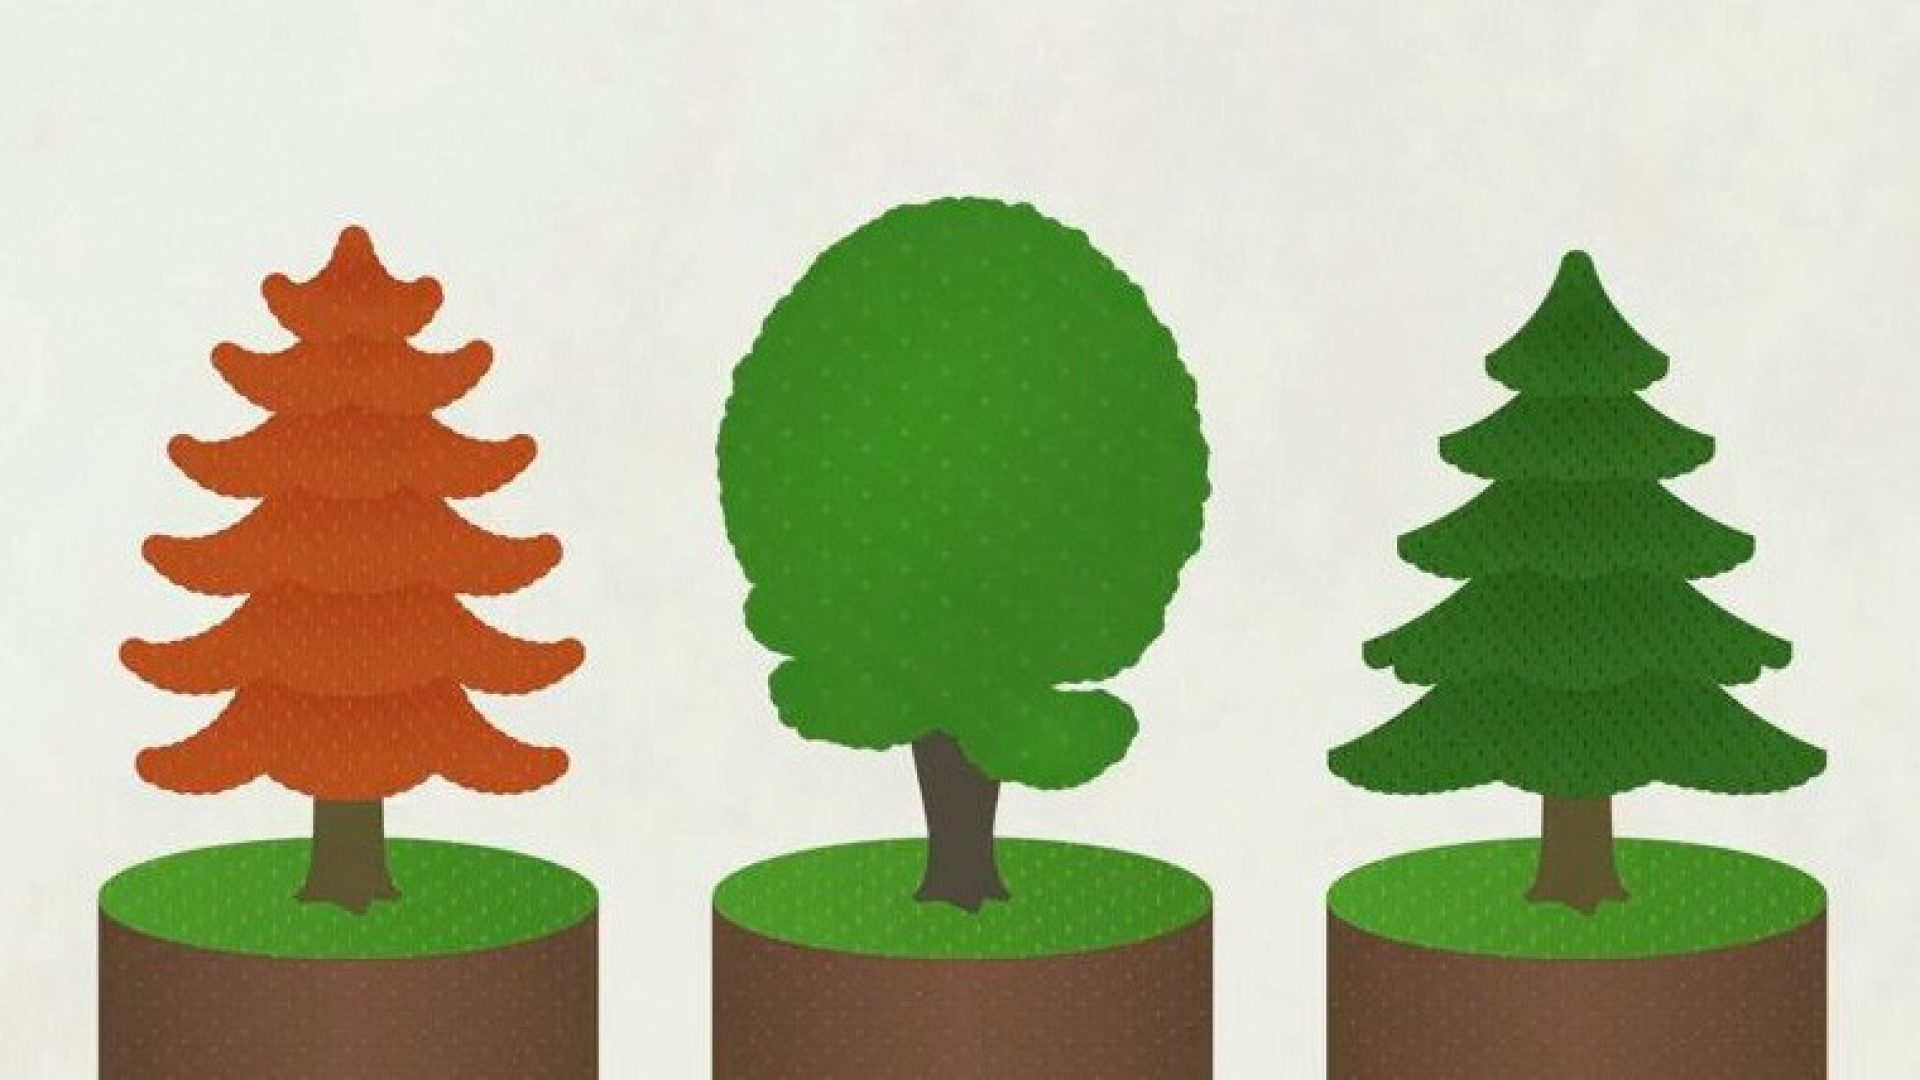 Wald ist mehr als die Summe seiner Bäume. Er schütz Leben, Hab und Gut vieler Menschen.